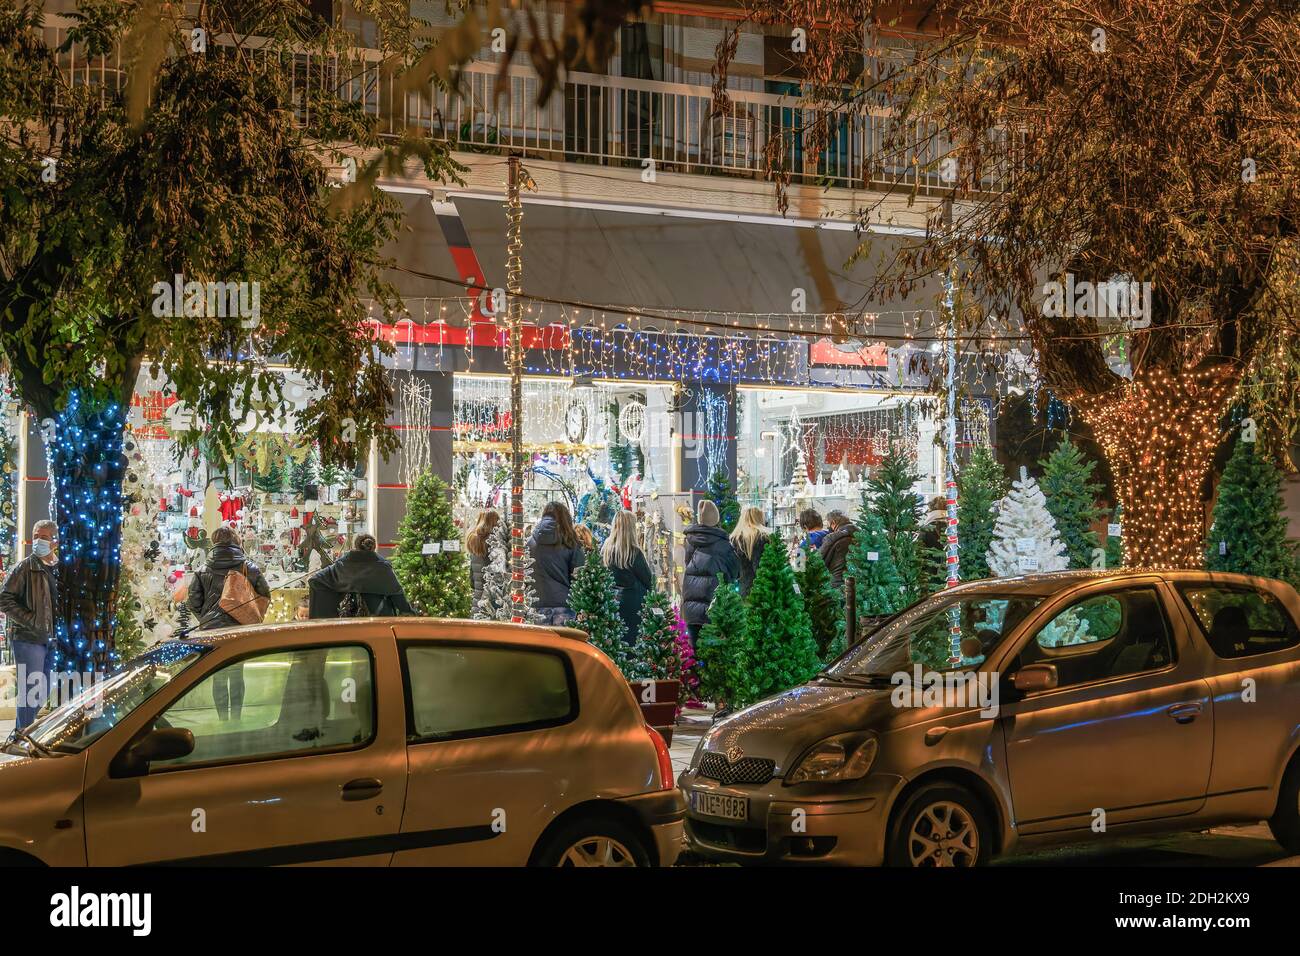 Thessaloniki, Griechenland - 8. Dezember 2020: Hellenic Weihnachtsgeschäft mit Kunden warten auf den Eingang.Menge in der Schlange außerhalb beleuchtet Nacht Blick auf dekorierten saisonalen Speicher. Stockfoto